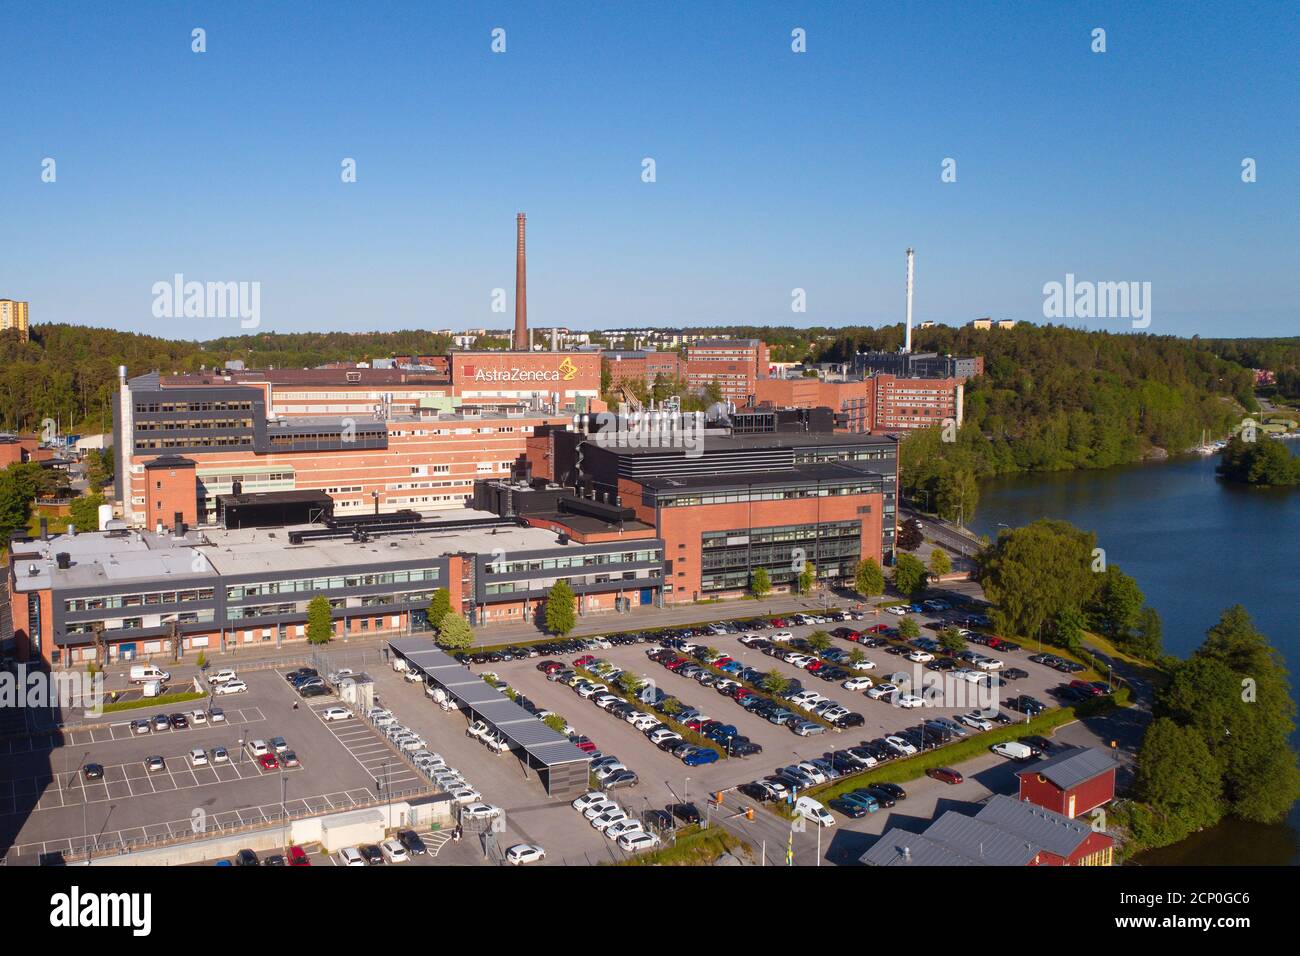 Sodertalje, Sweden - June 10, 2020: Aerial view of the AstraZeneca pharmaceutical production plant at Snackviken. Stock Photo